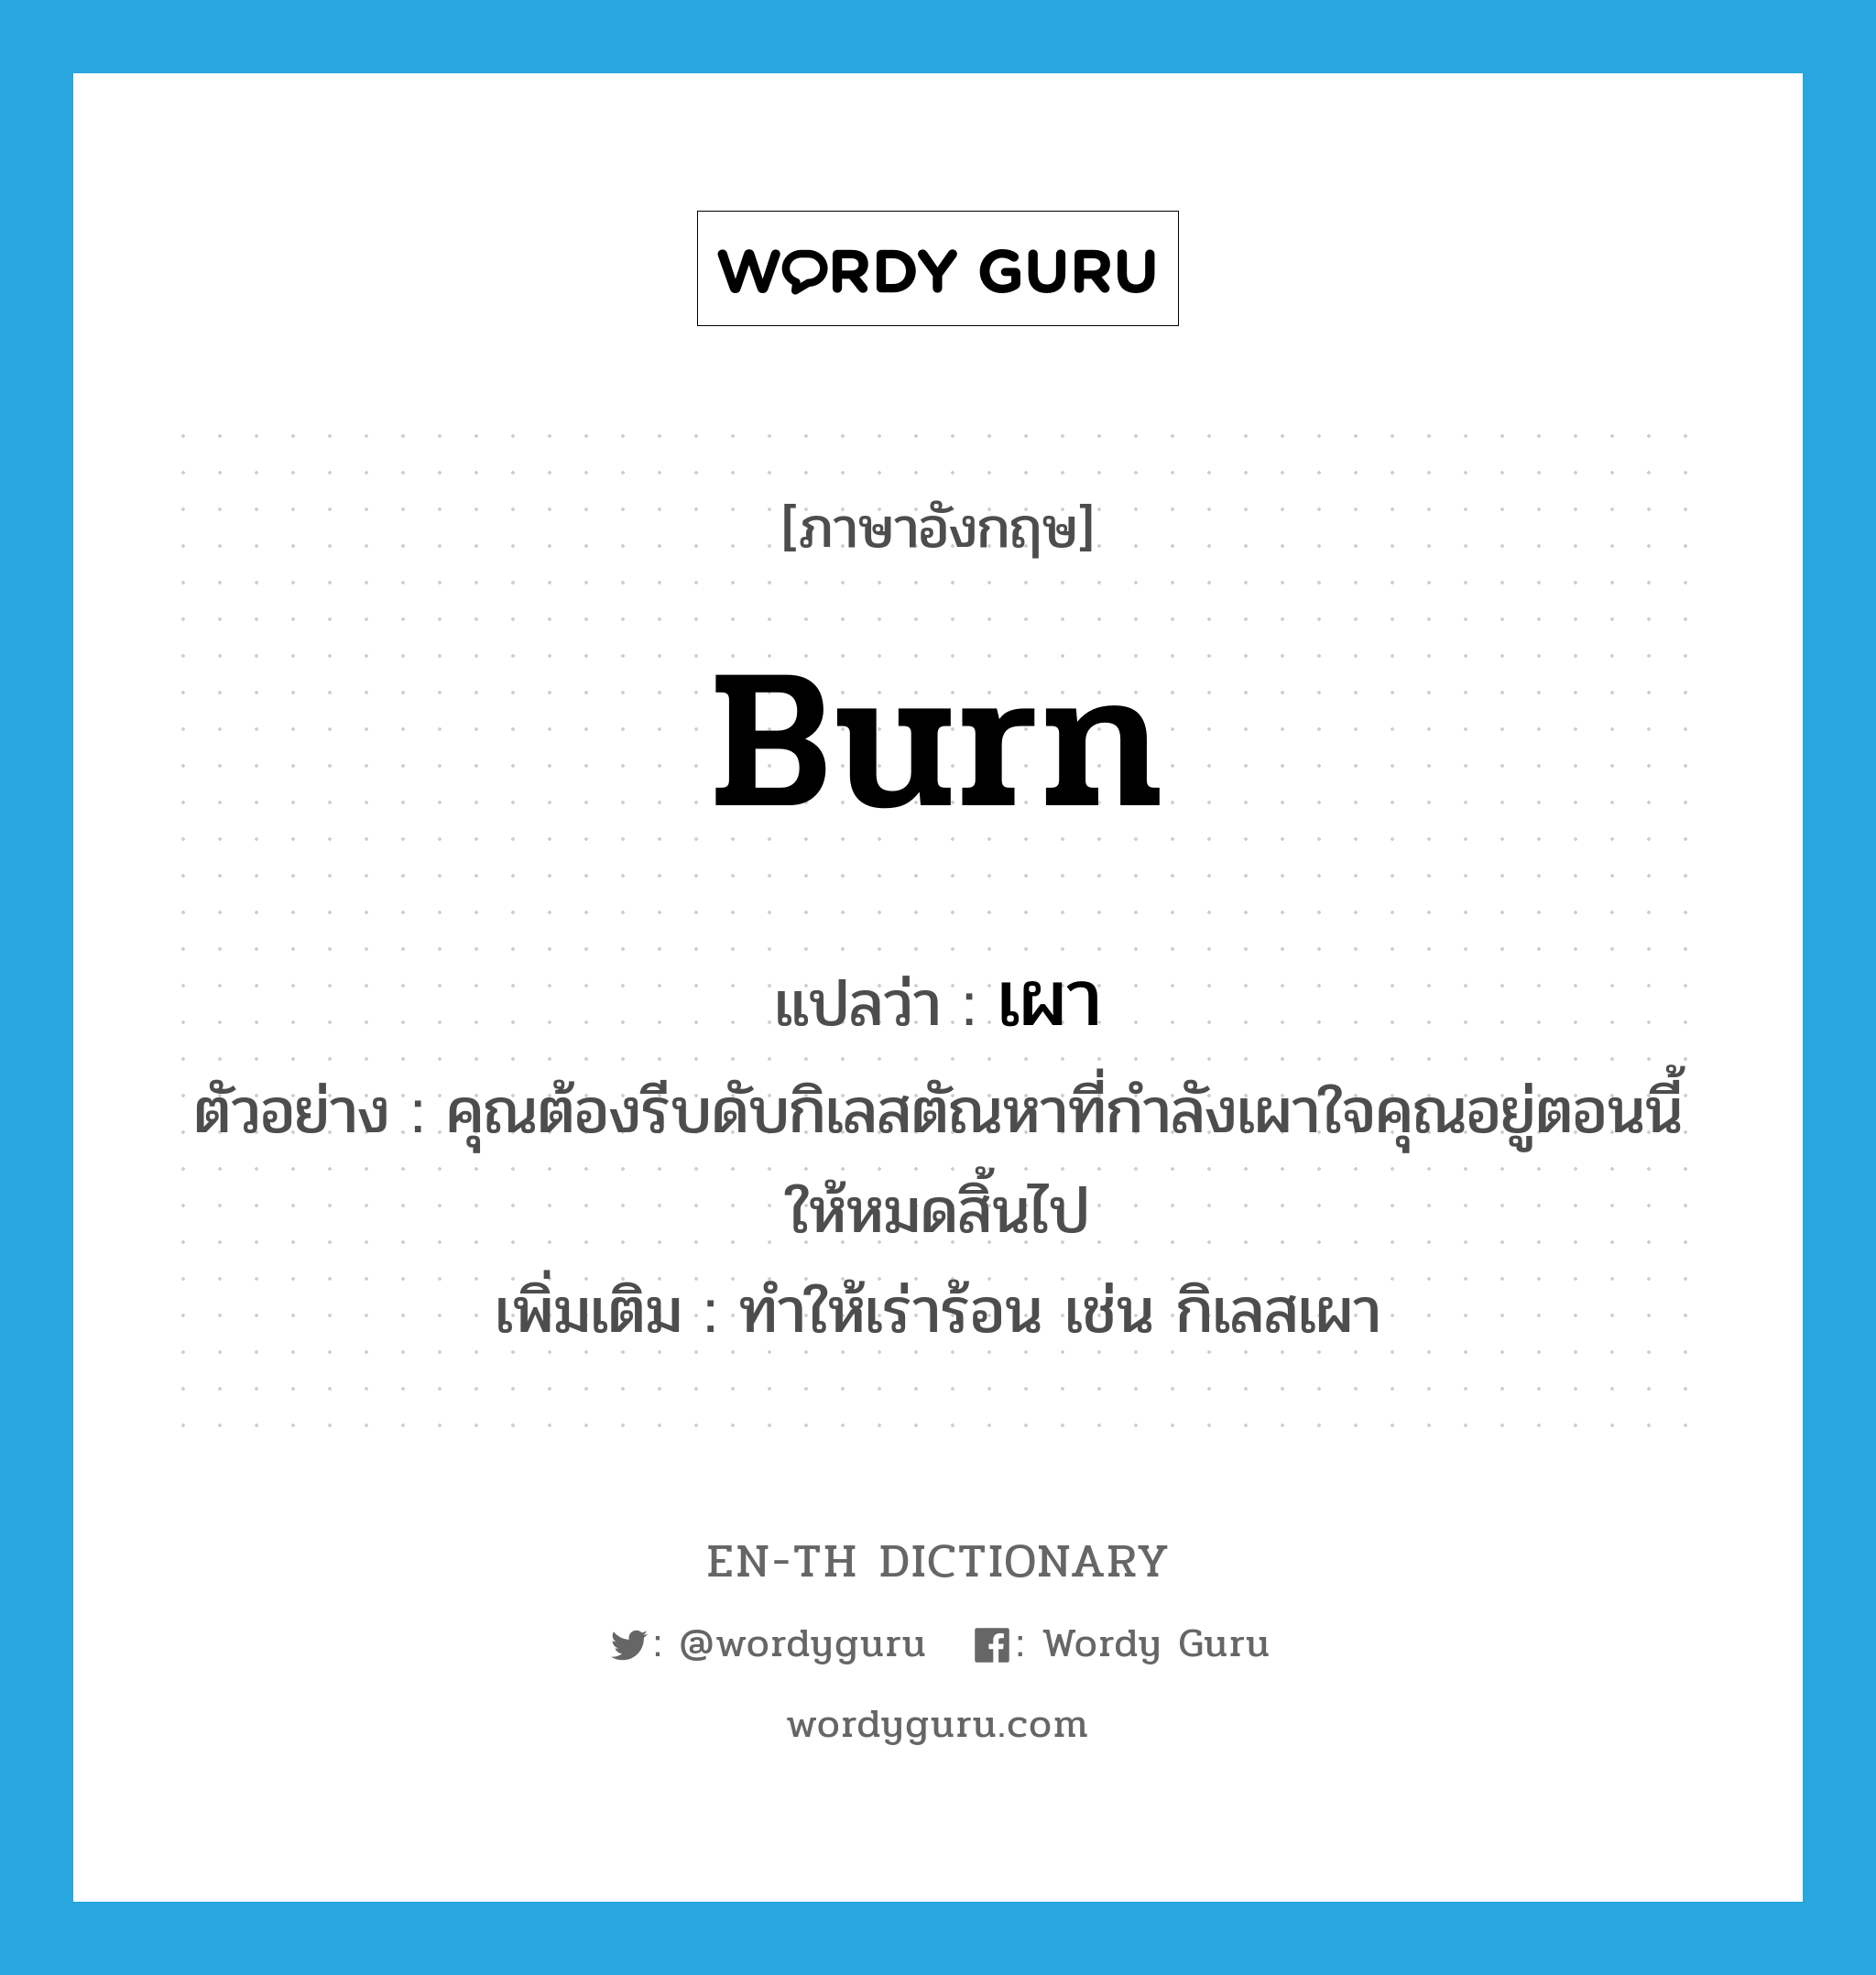 burn แปลว่า?, คำศัพท์ภาษาอังกฤษ burn แปลว่า เผา ประเภท V ตัวอย่าง คุณต้องรีบดับกิเลสตัณหาที่กำลังเผาใจคุณอยู่ตอนนี้ให้หมดสิ้นไป เพิ่มเติม ทําให้เร่าร้อน เช่น กิเลสเผา หมวด V